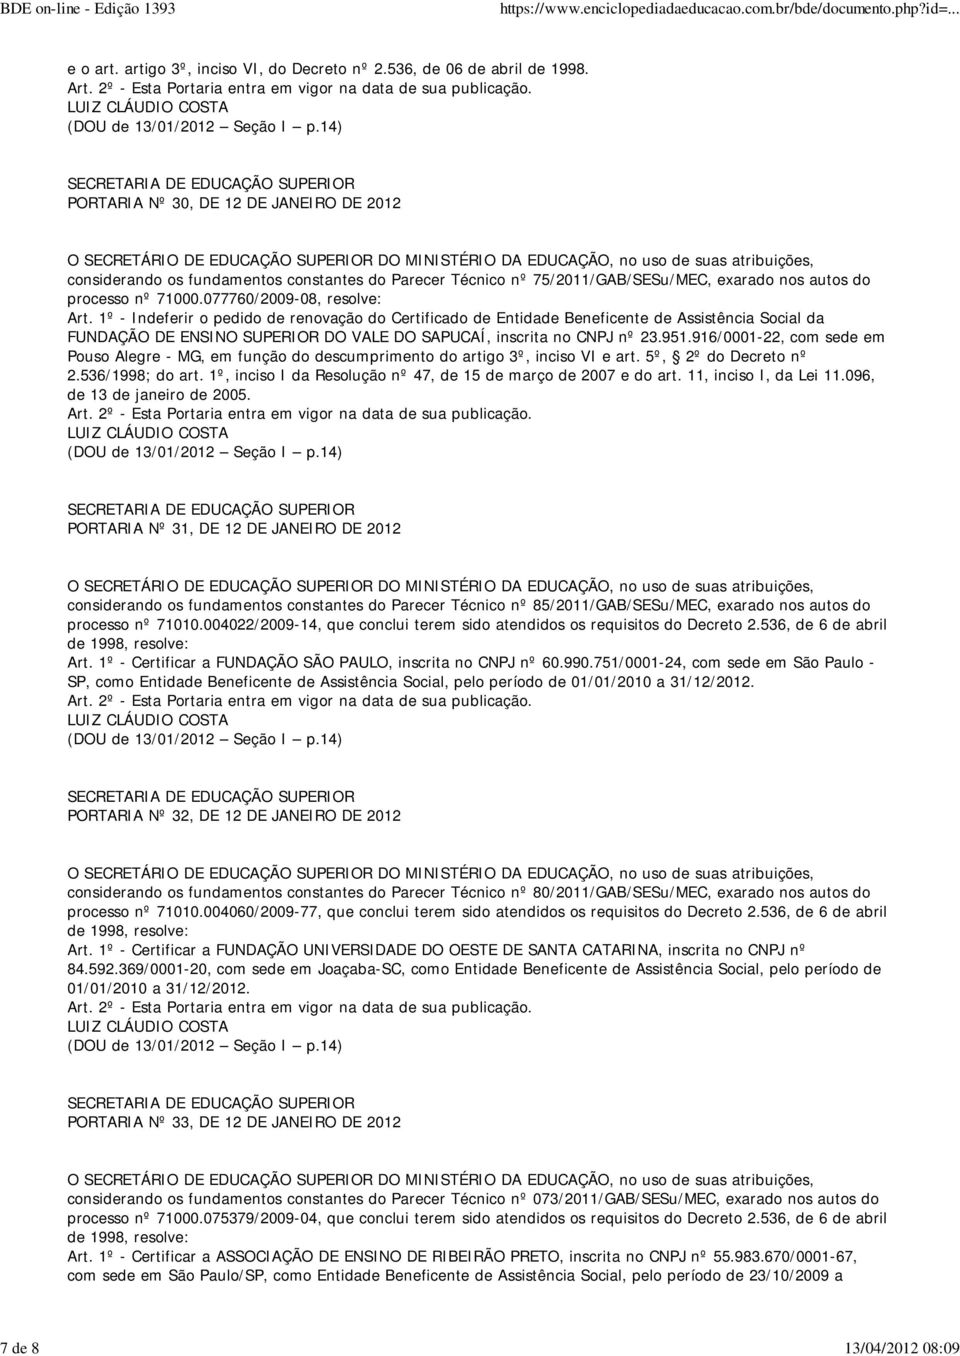 077760/2009-08, resolve: FUNDAÇÃO DE ENSINO SUPERIOR DO VALE DO SAPUCAÍ, inscrita no CNPJ nº 23.951.